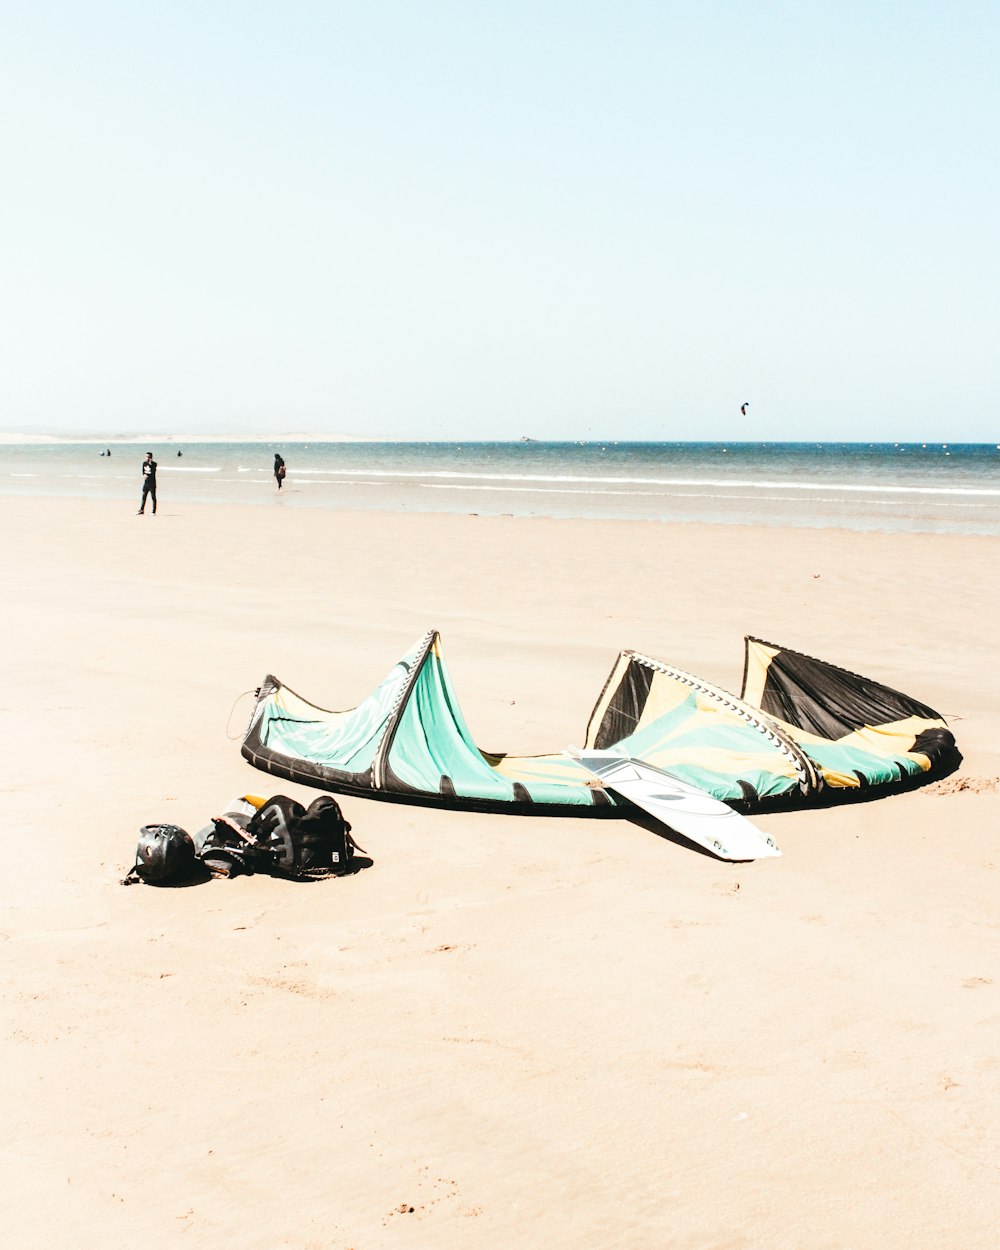 tavola da surf bianca sulla sabbia vicino allo specchio d'acqua